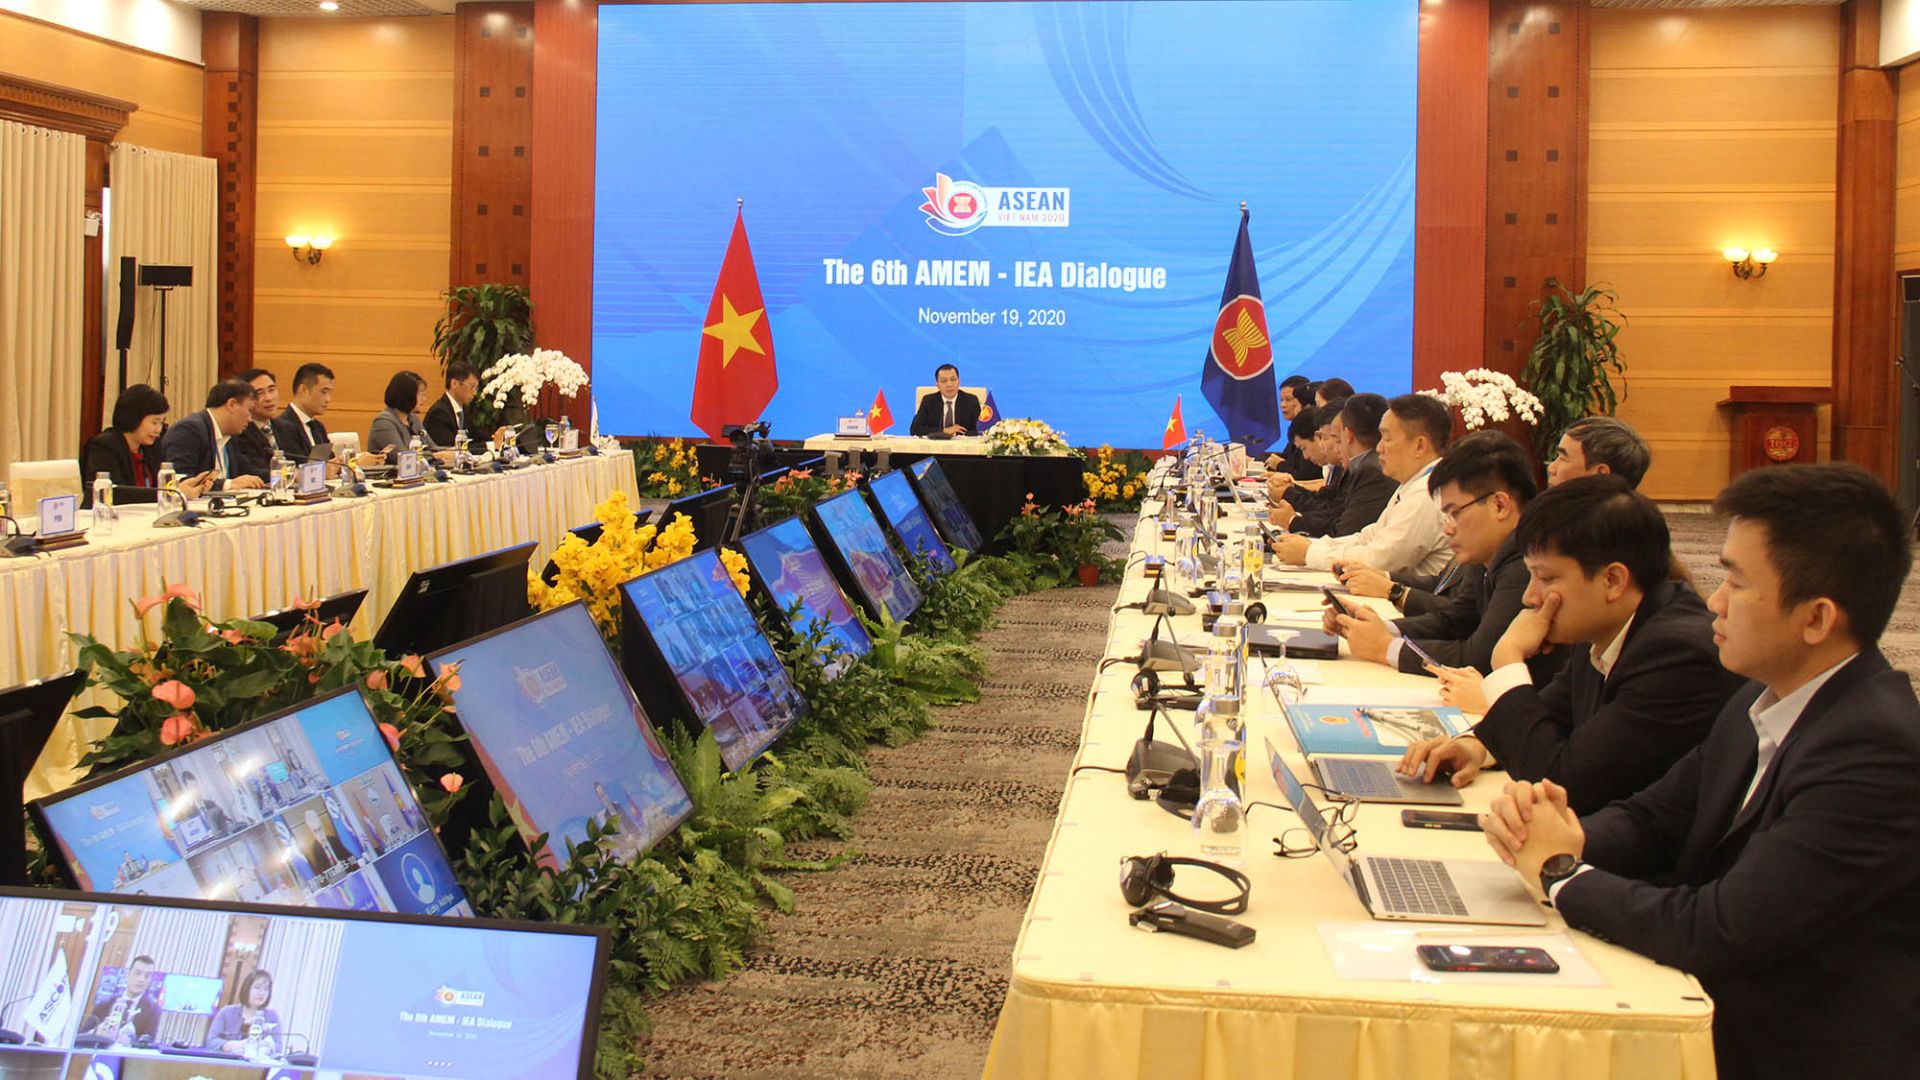 Hội nghị đối thoại Bộ trưởng Năng lượng các nước ASEAN và Cơ quan Năng lượng quốc tế 